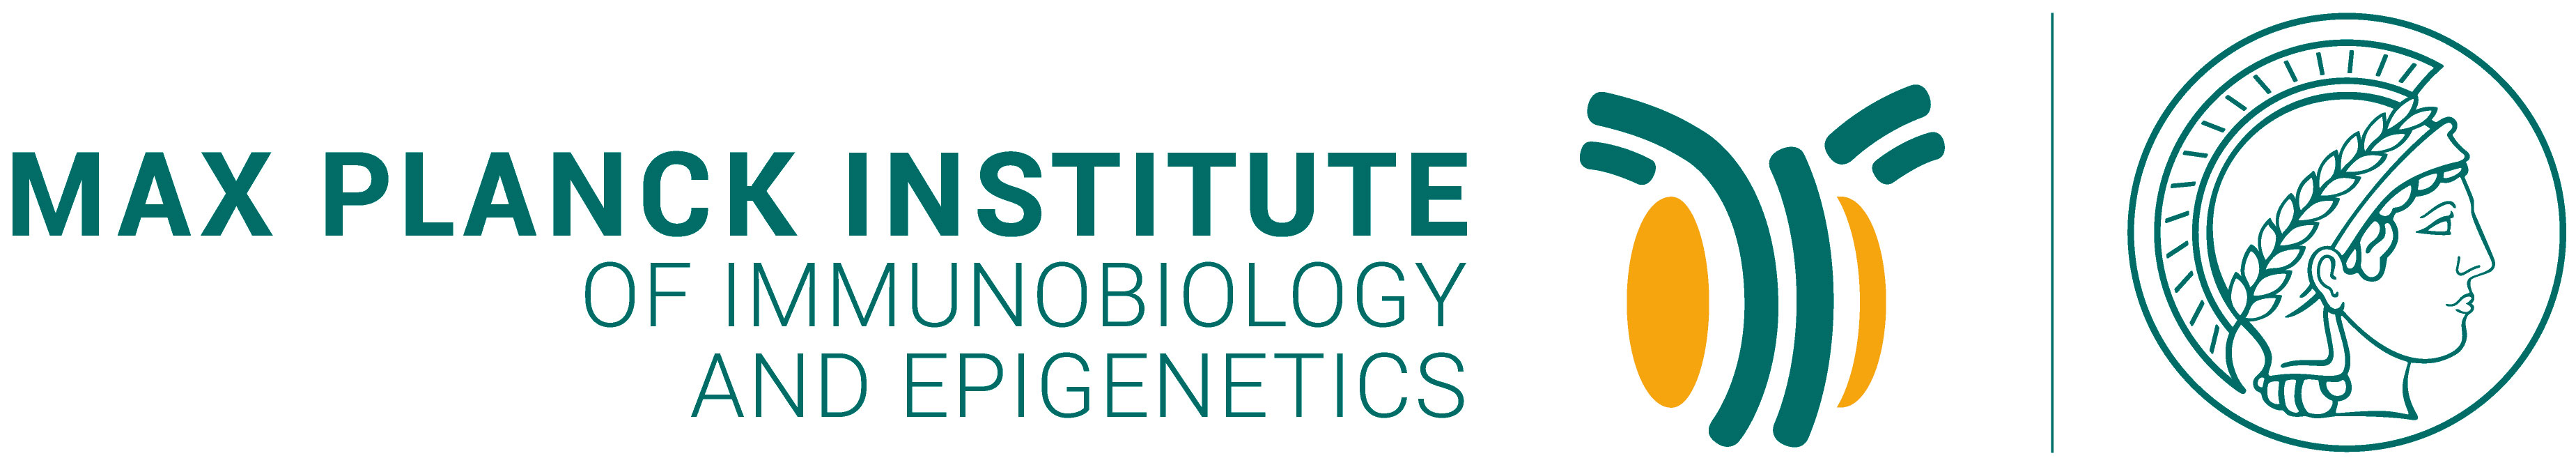 Logo Max Planck Institute of Immunobiology and Epigenetics